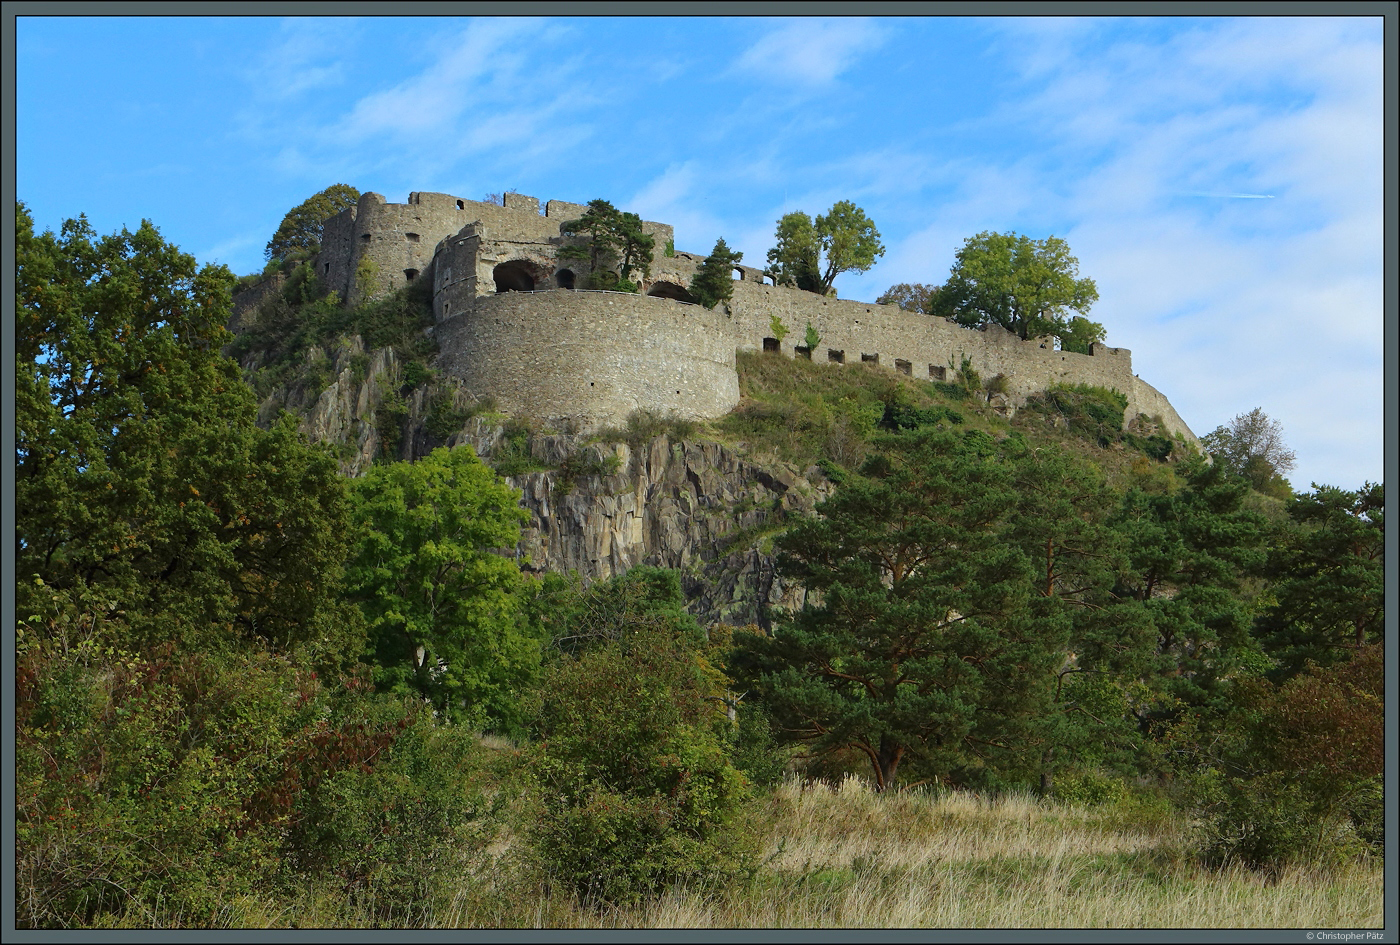 Die Festung Hohentwiel liegt auf einem Felsen oberhalb der Stadt Singen. Bereits im 10. Jahrhundert entstand hier eine Burg, die in den folgenden Jahrhunderten immer wieder umgebaut und erweitert wurde. Im Jahr 1800/1801 wurde sie auf Gehei der Franzosen zerstrt. (Singen, 07.10.2023)